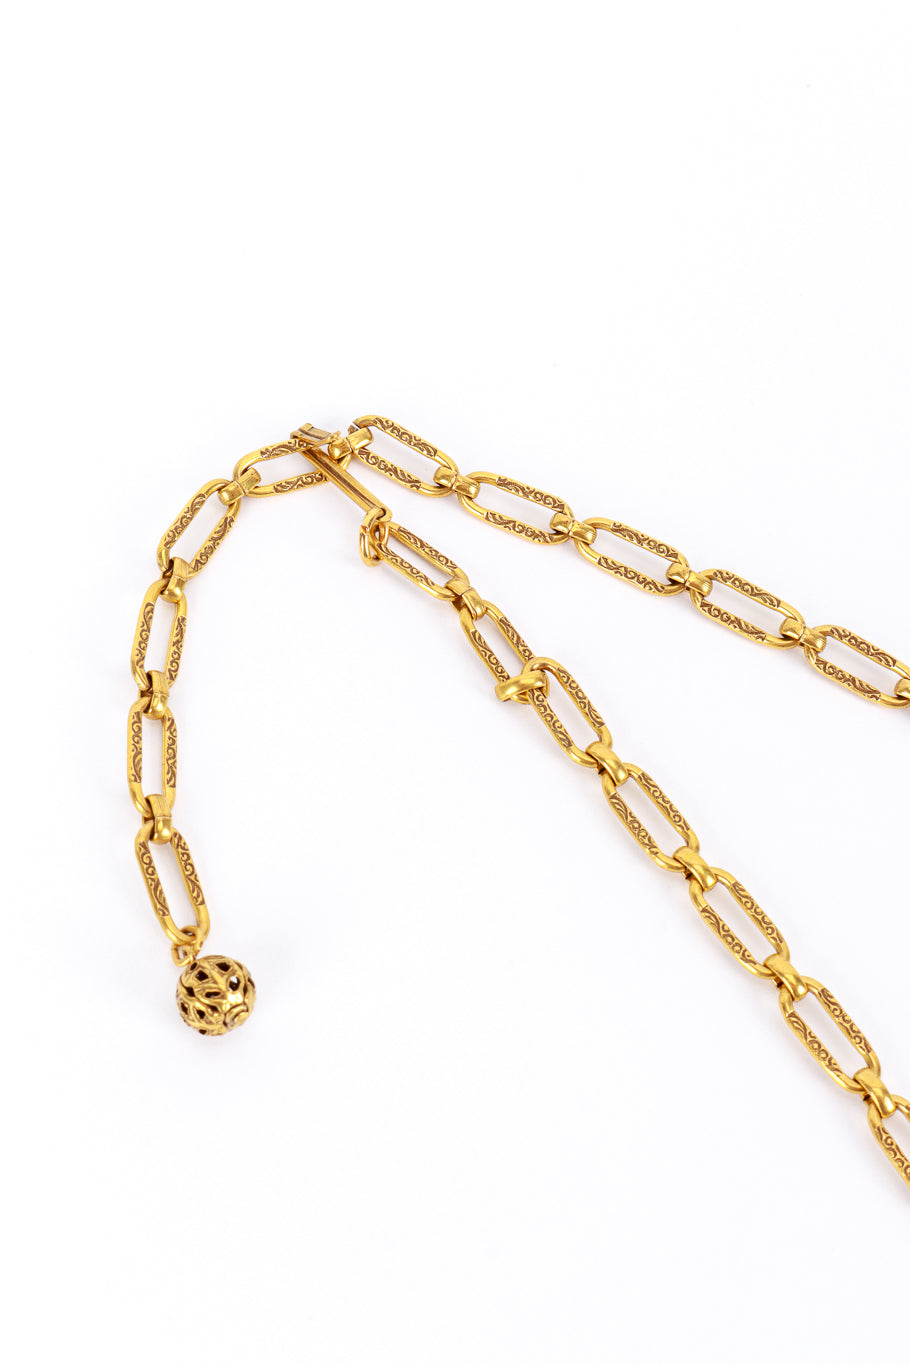 Goldette Brutalist Drop Necklace chain detail @RECESS LA